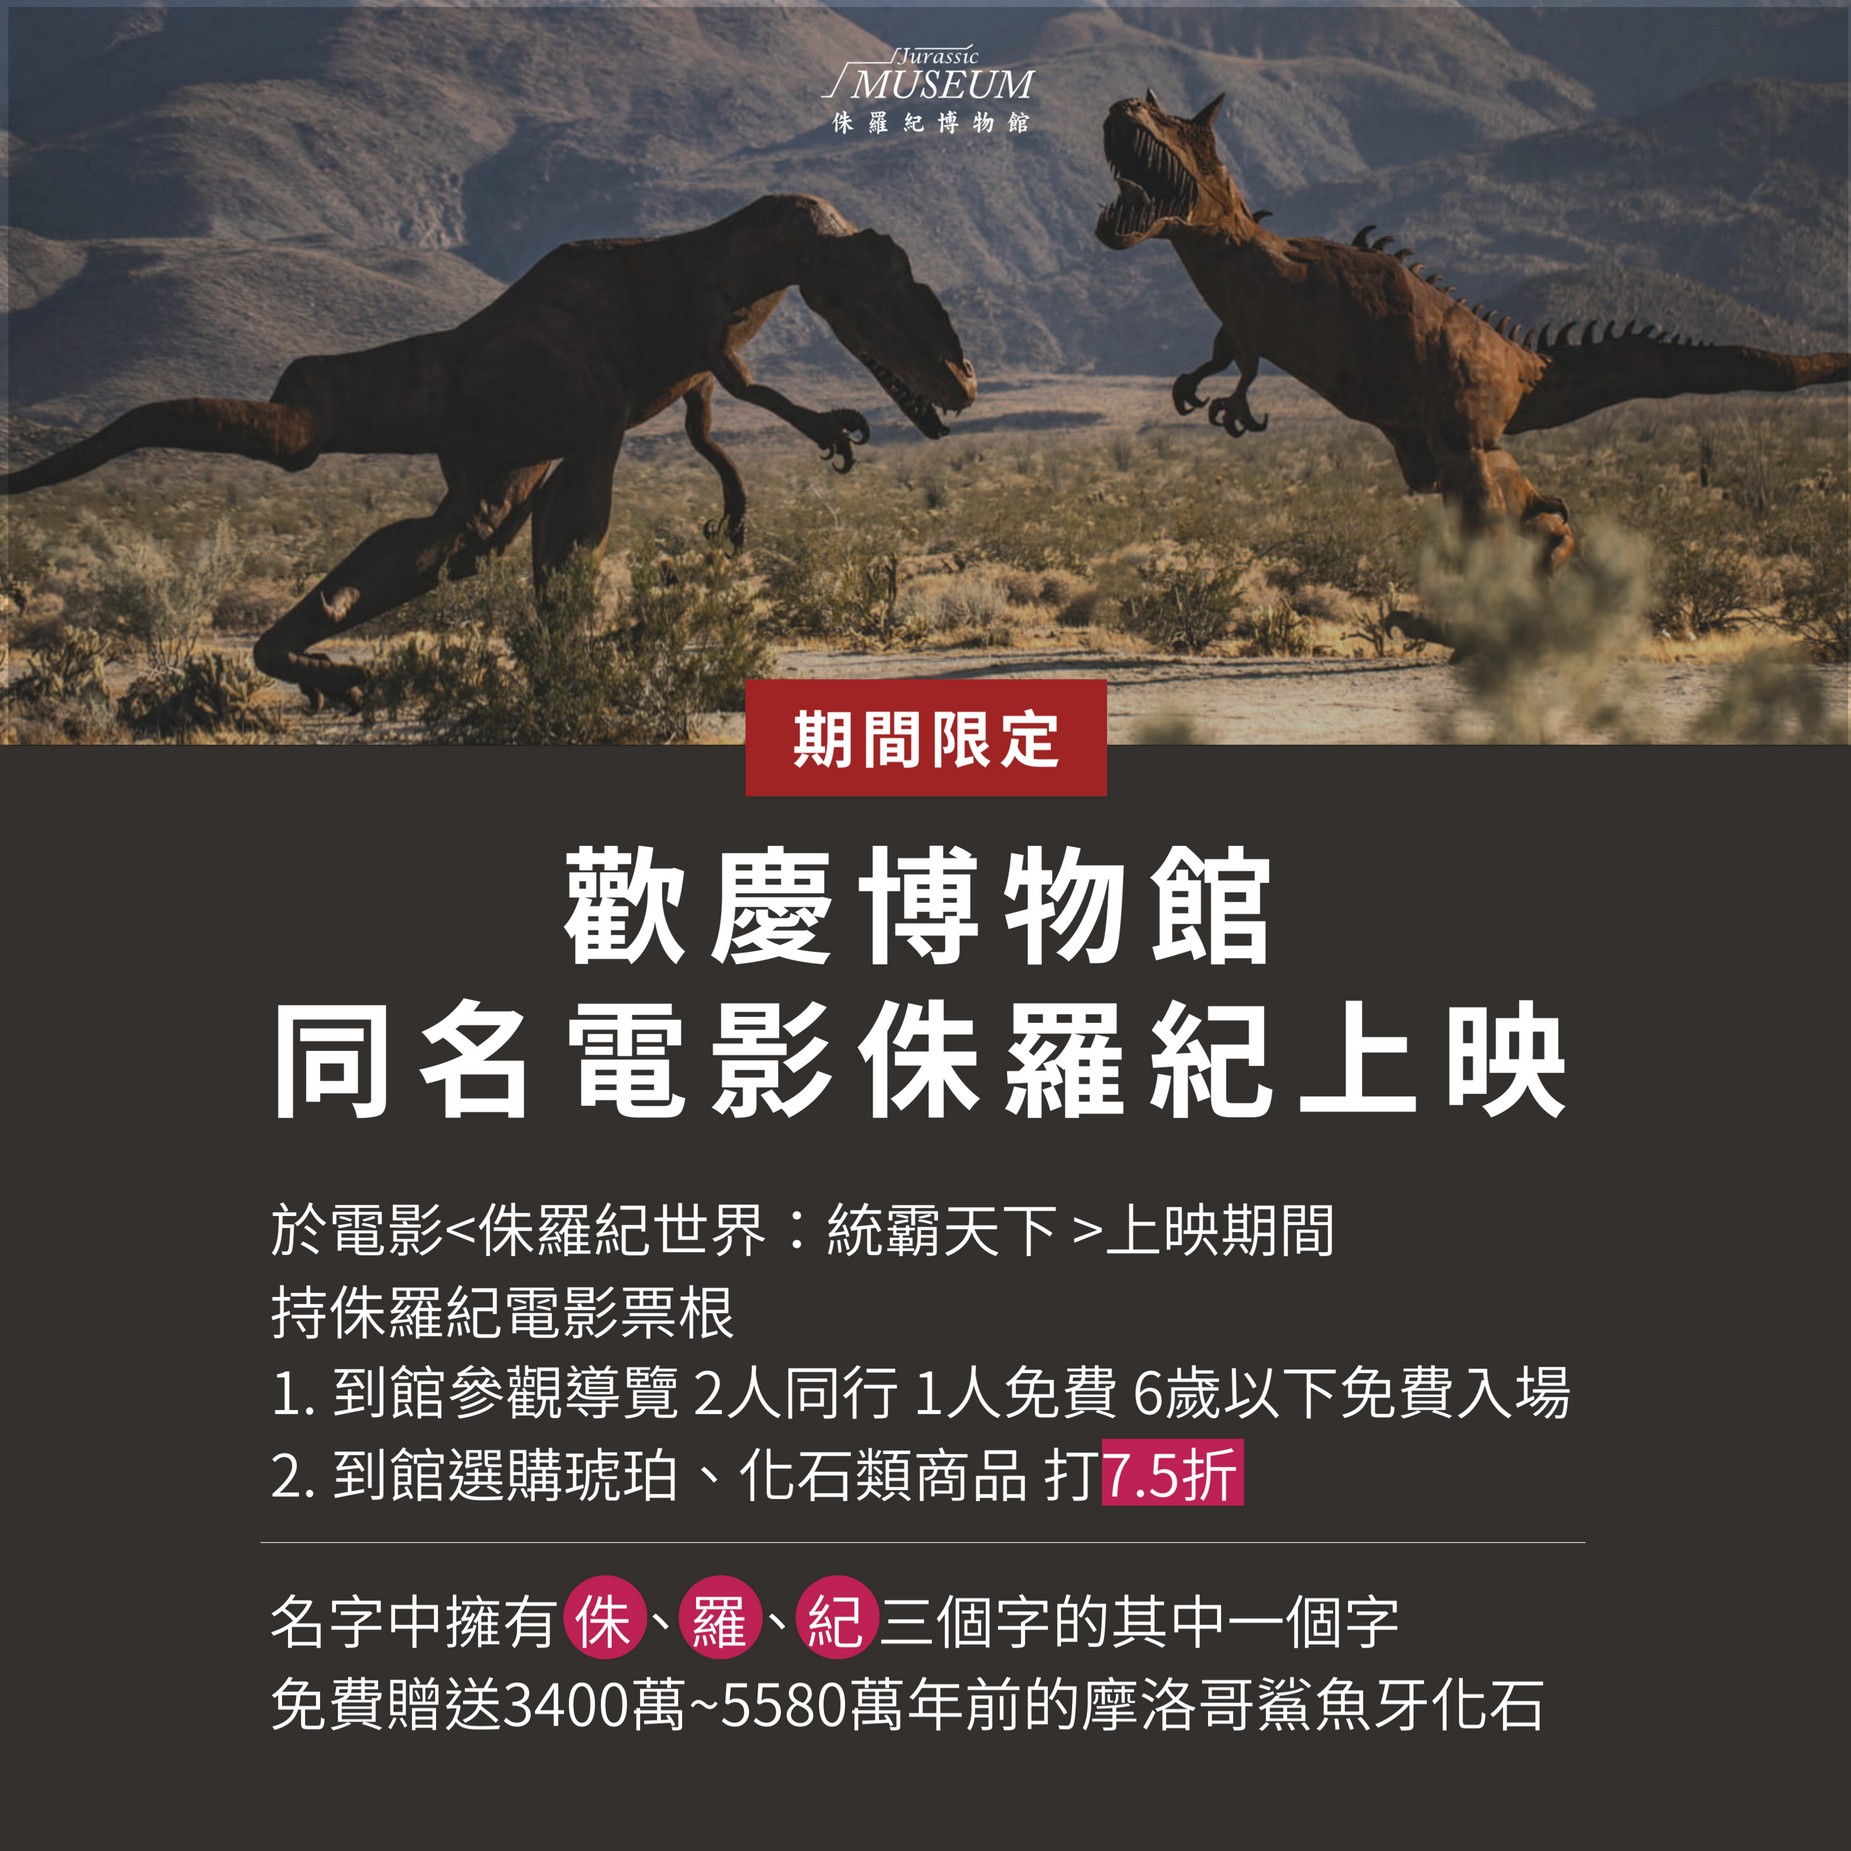 歡慶博物館 同名電影侏羅紀上映